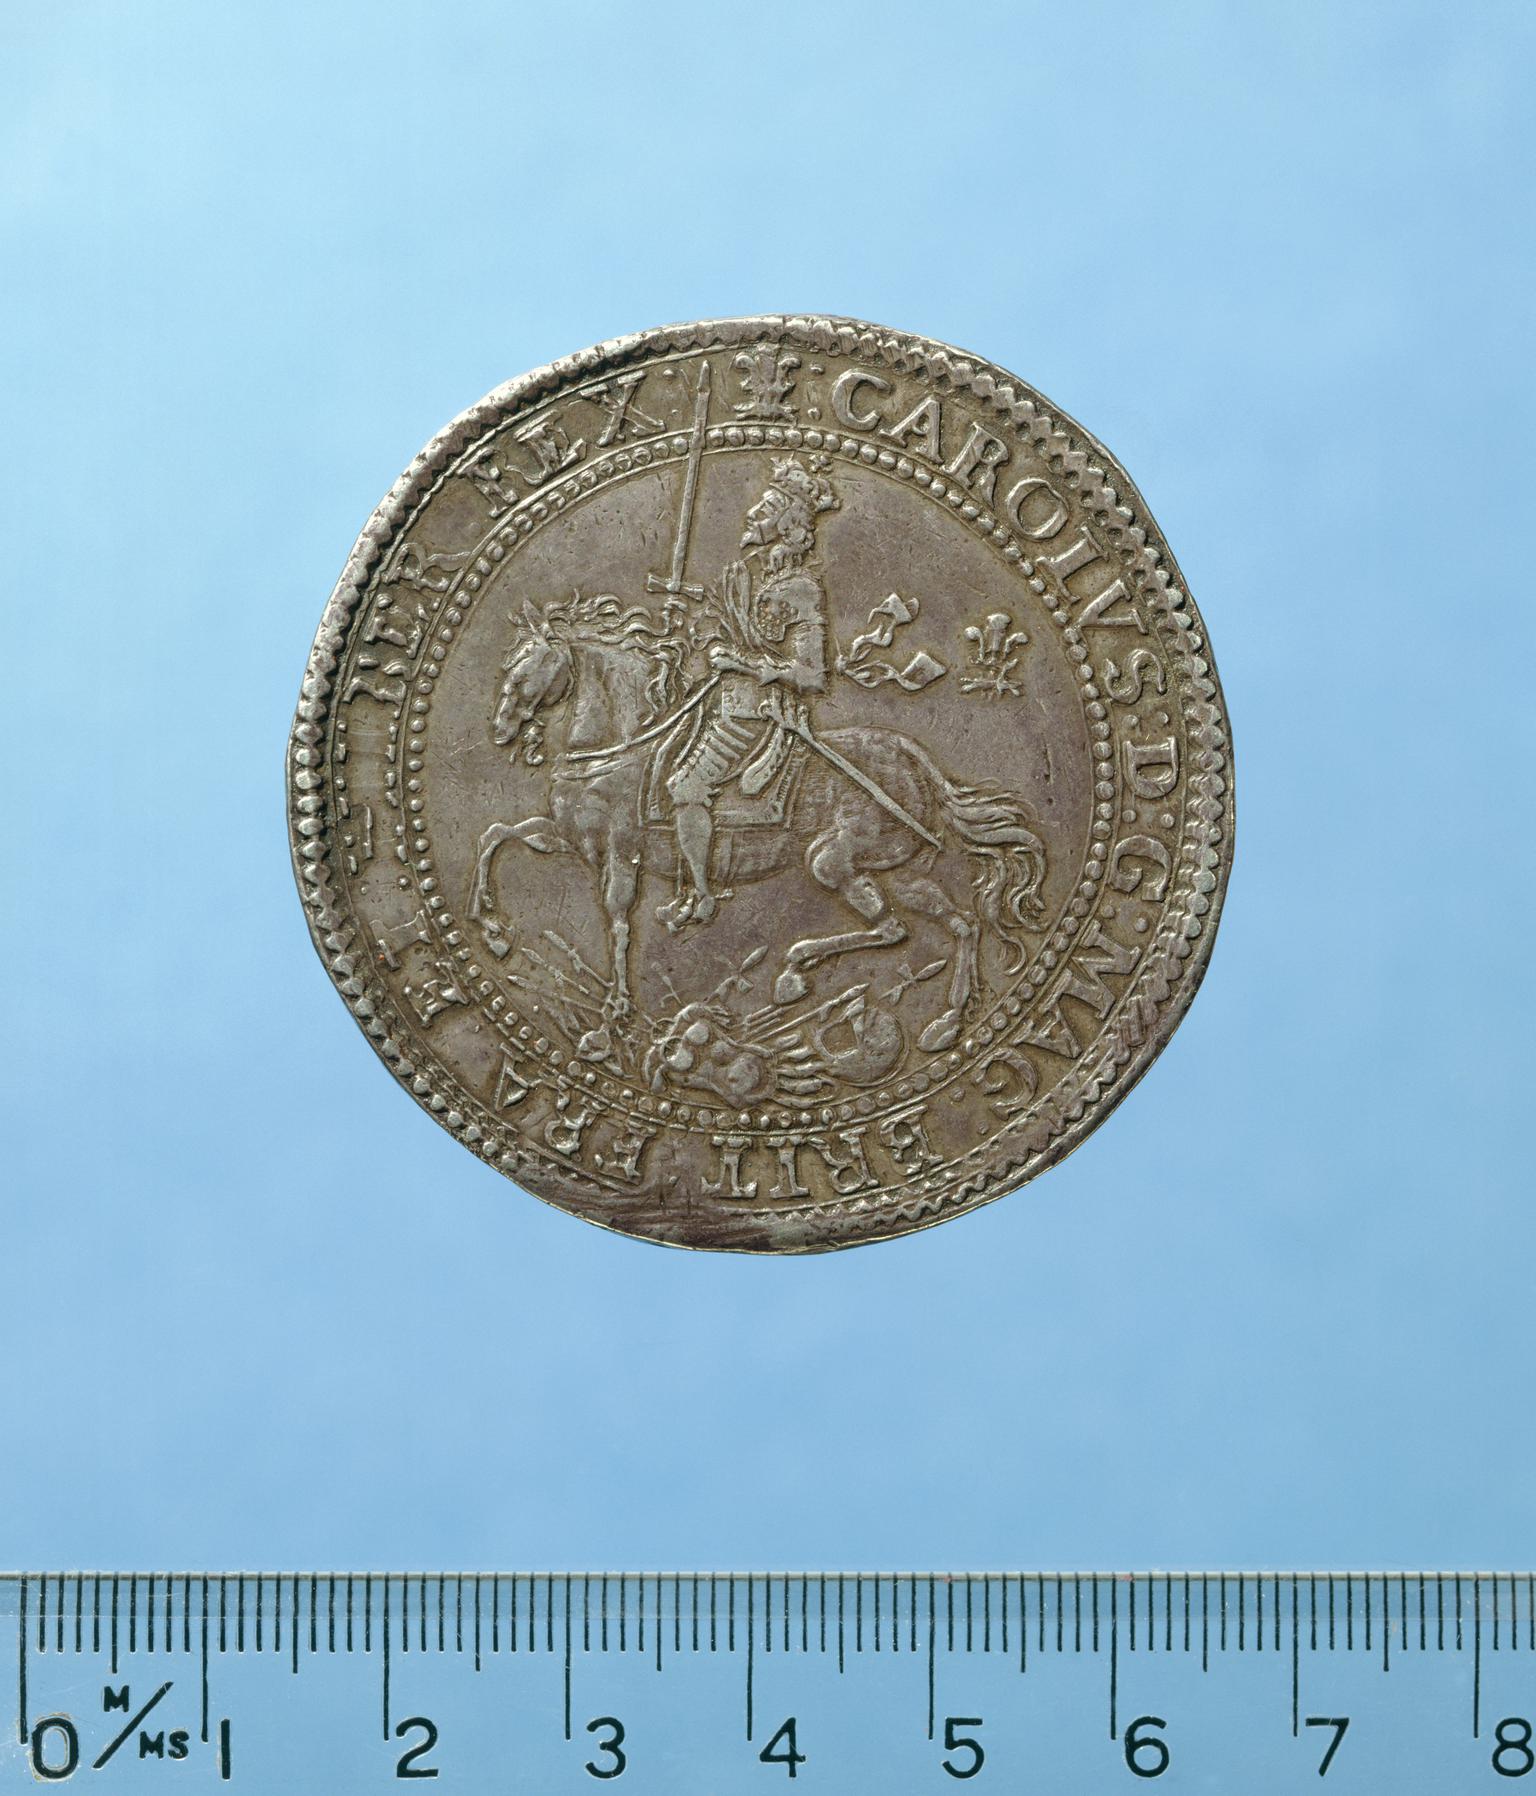 Charles I pound piece